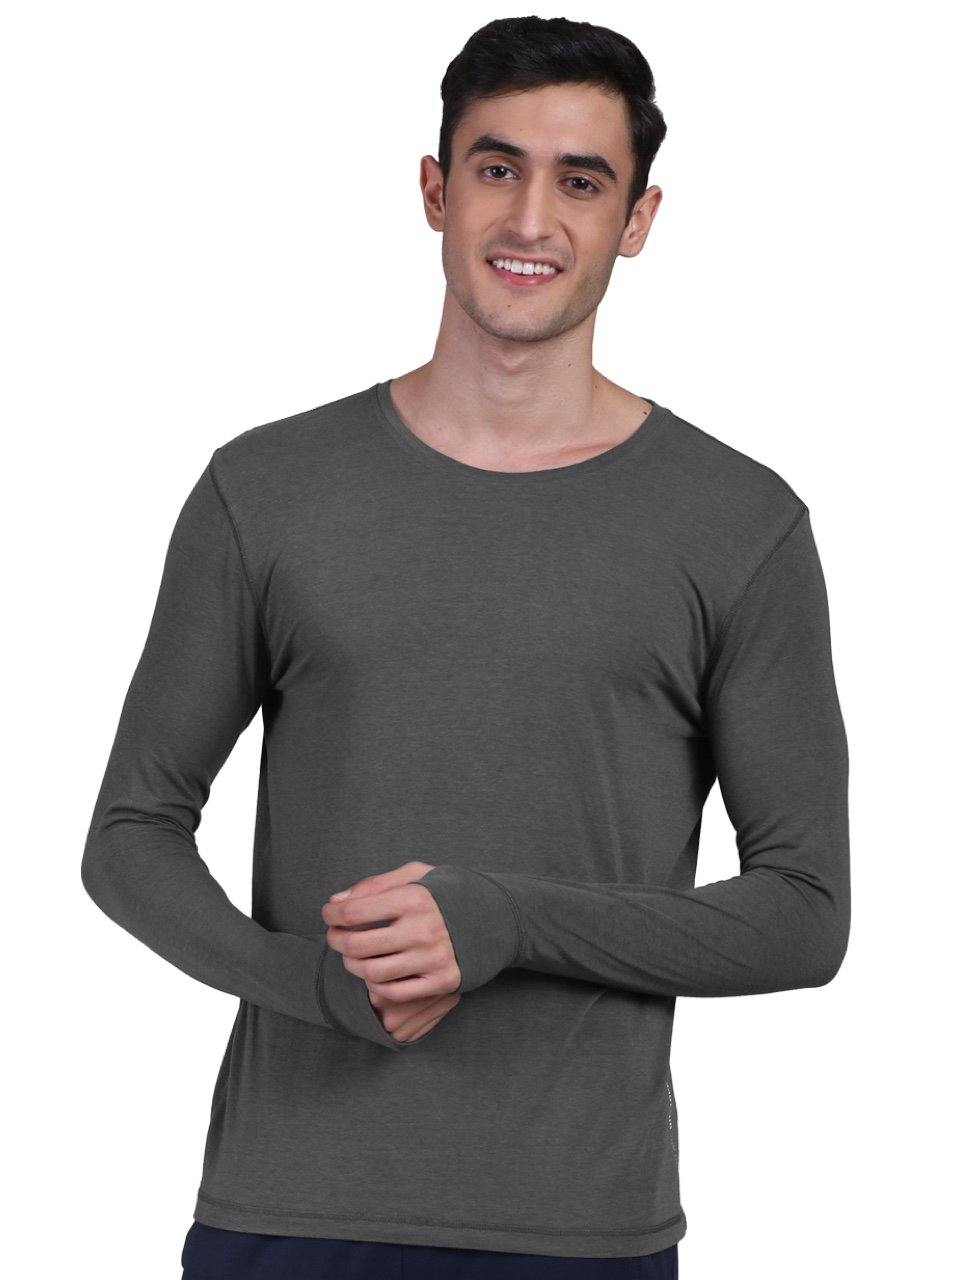 Men's Organic Bamboo Skins (Full Sleeves-Undershirt, Loungewear, Sleepwear) - Pack of 2 - freecultr.com